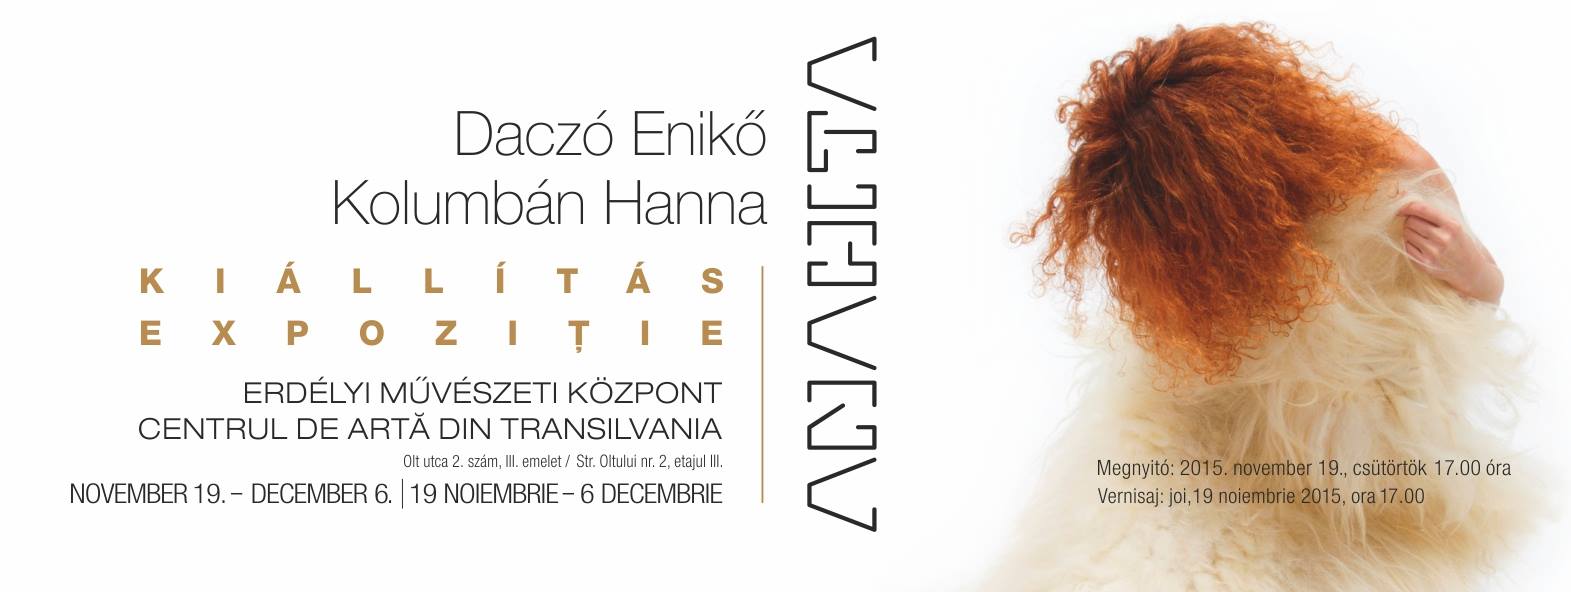 ANAHITA – Daczó Enikő és Kolumbán Hanna kiállítása - Erdélyi Művészeti Központ – 2015